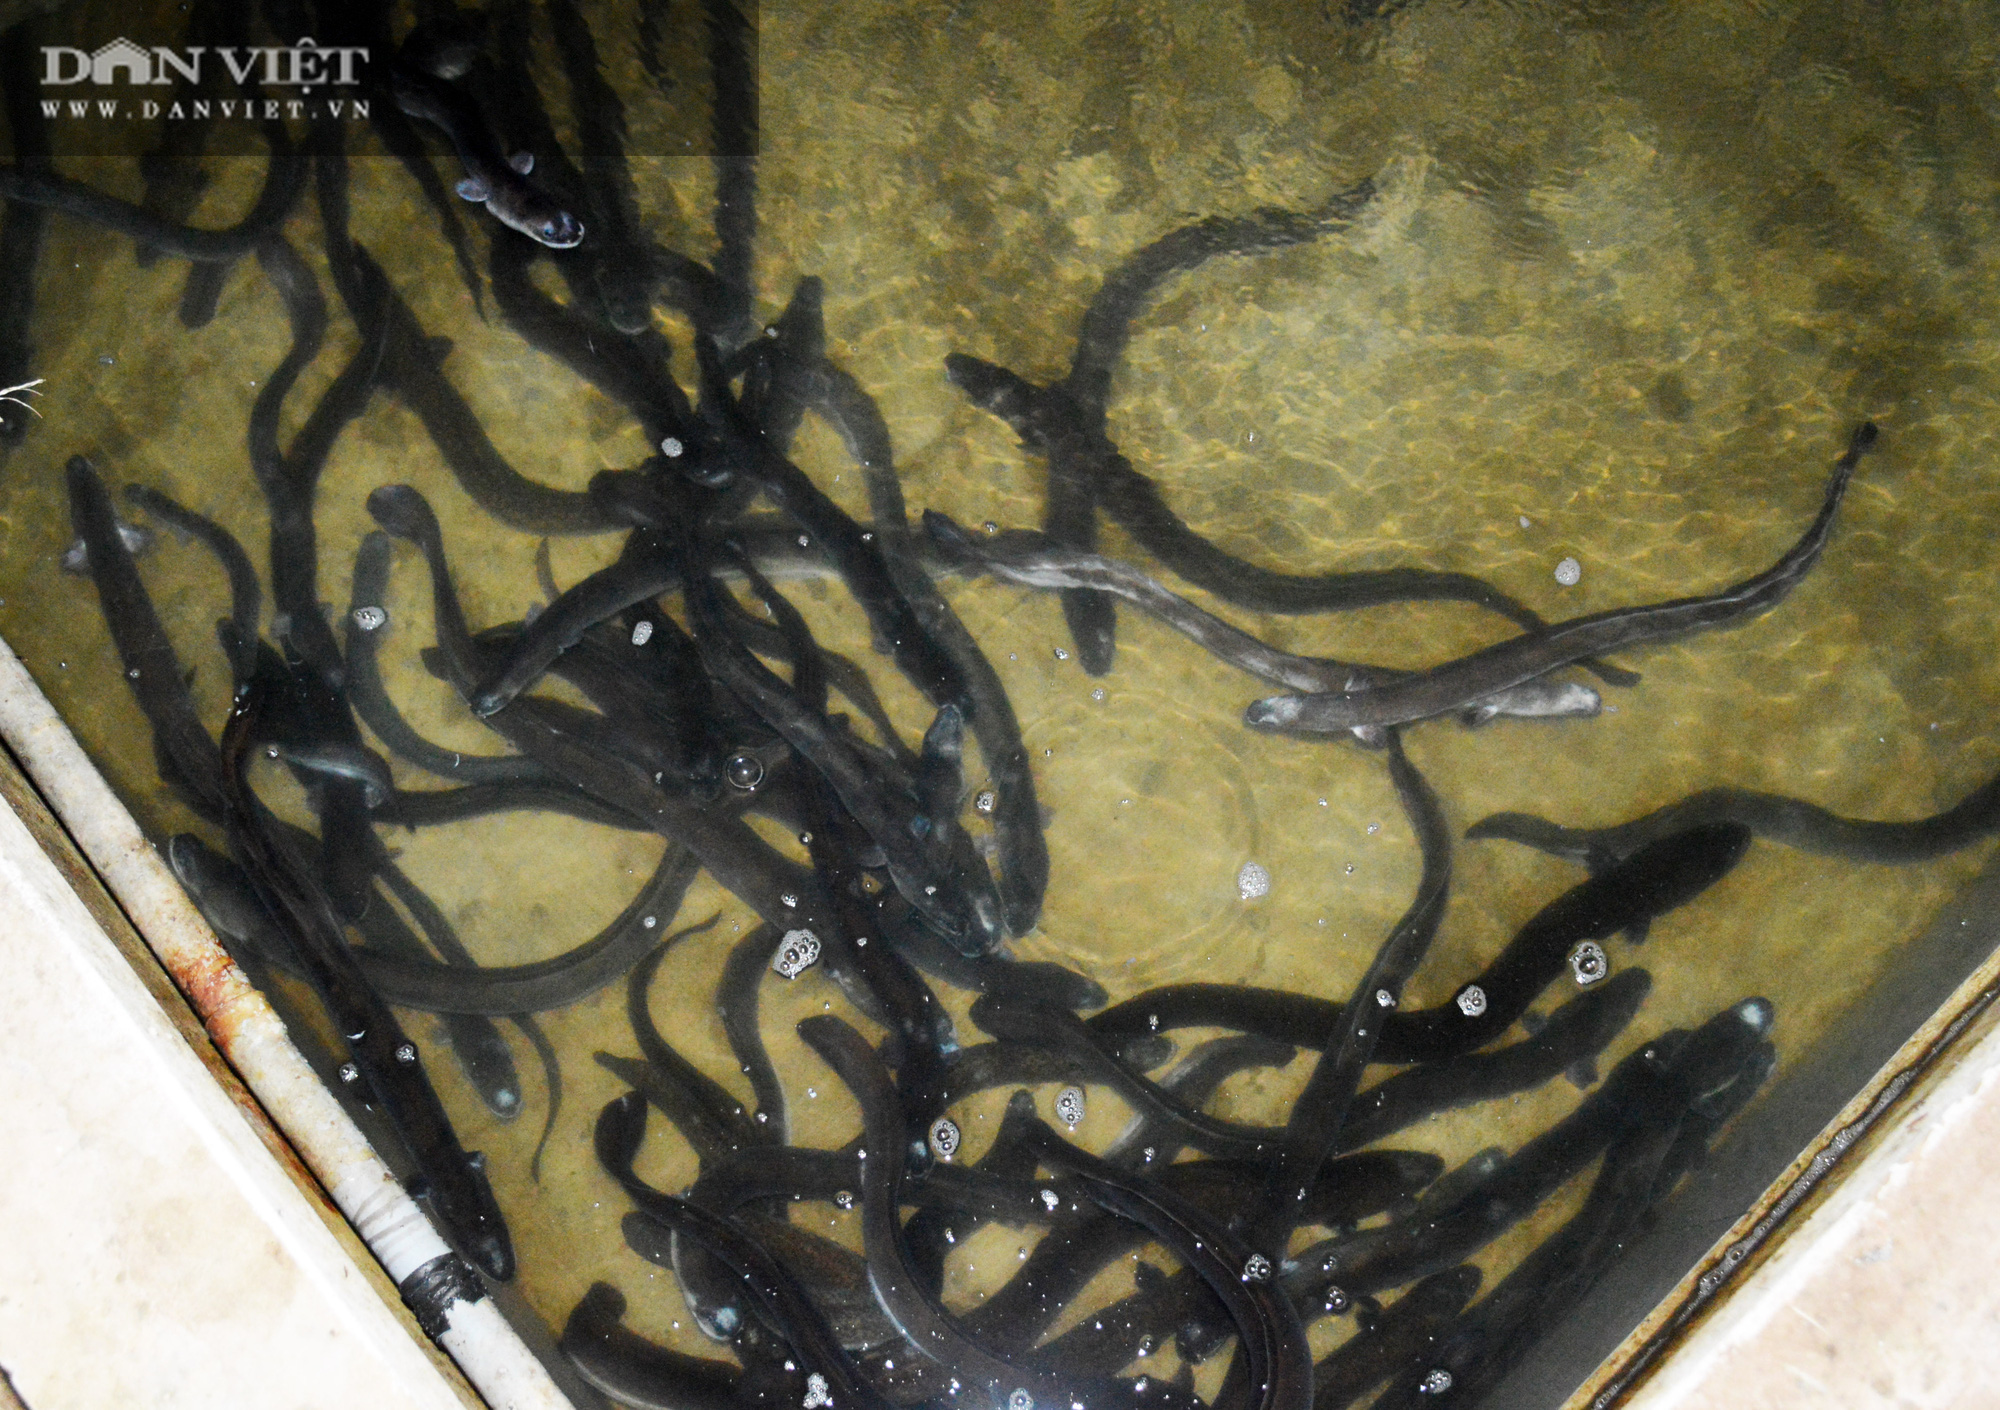 Nguyên Bí thư huyện trót “mê” con cá chình, nuôi cả đàn cá dày đặt trên bể xi măng - Ảnh 4.